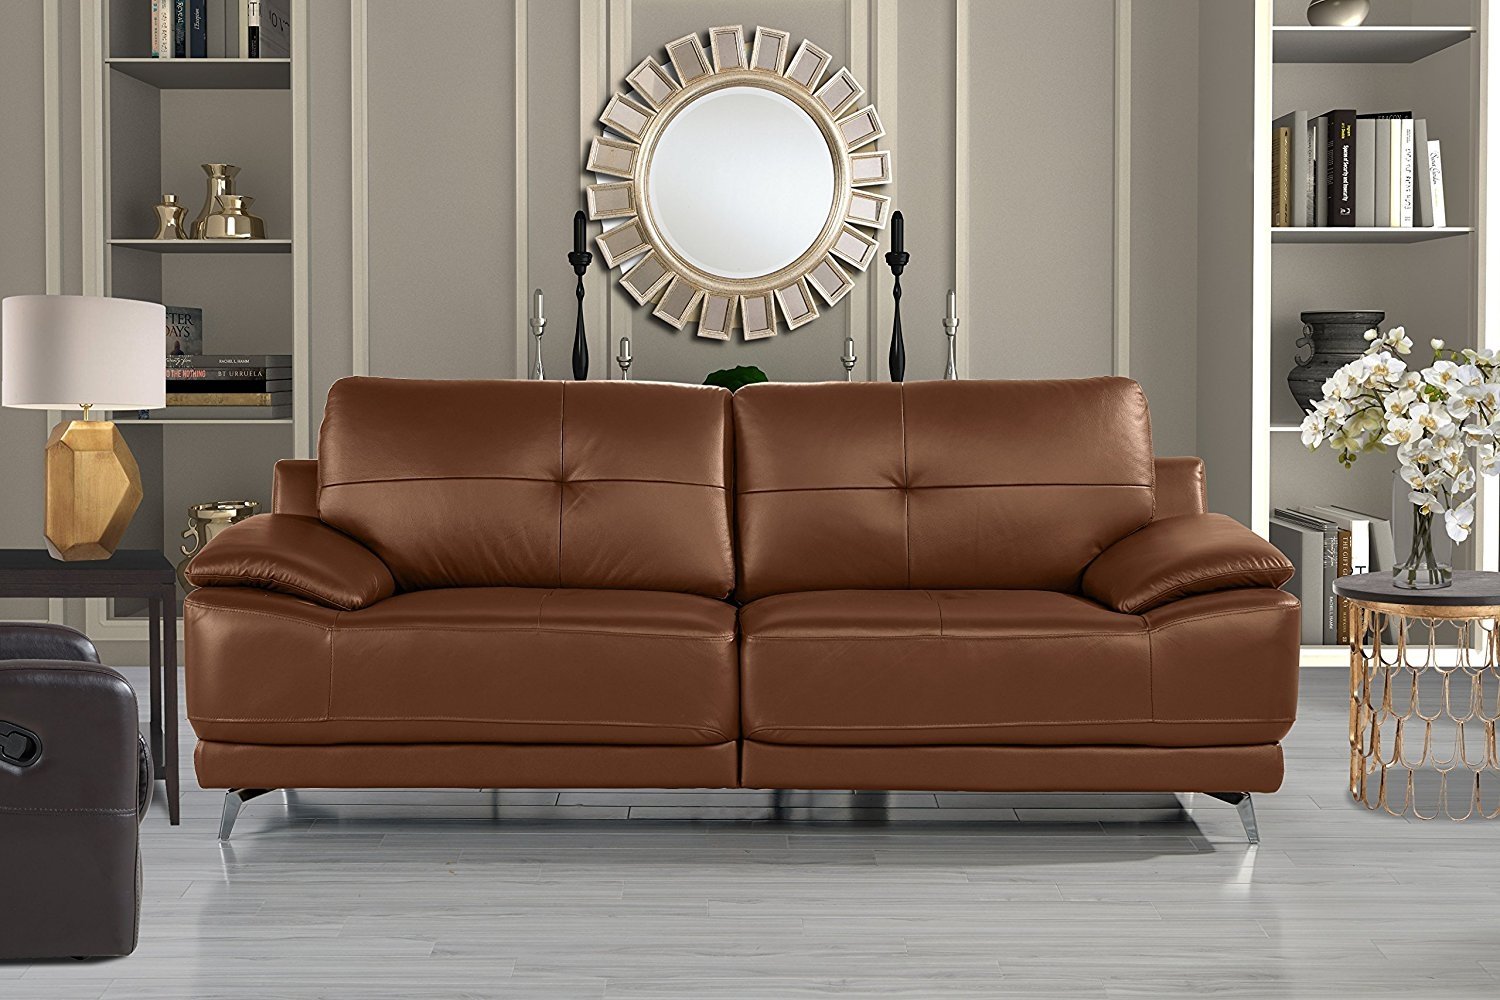 camel sofa living room ideas